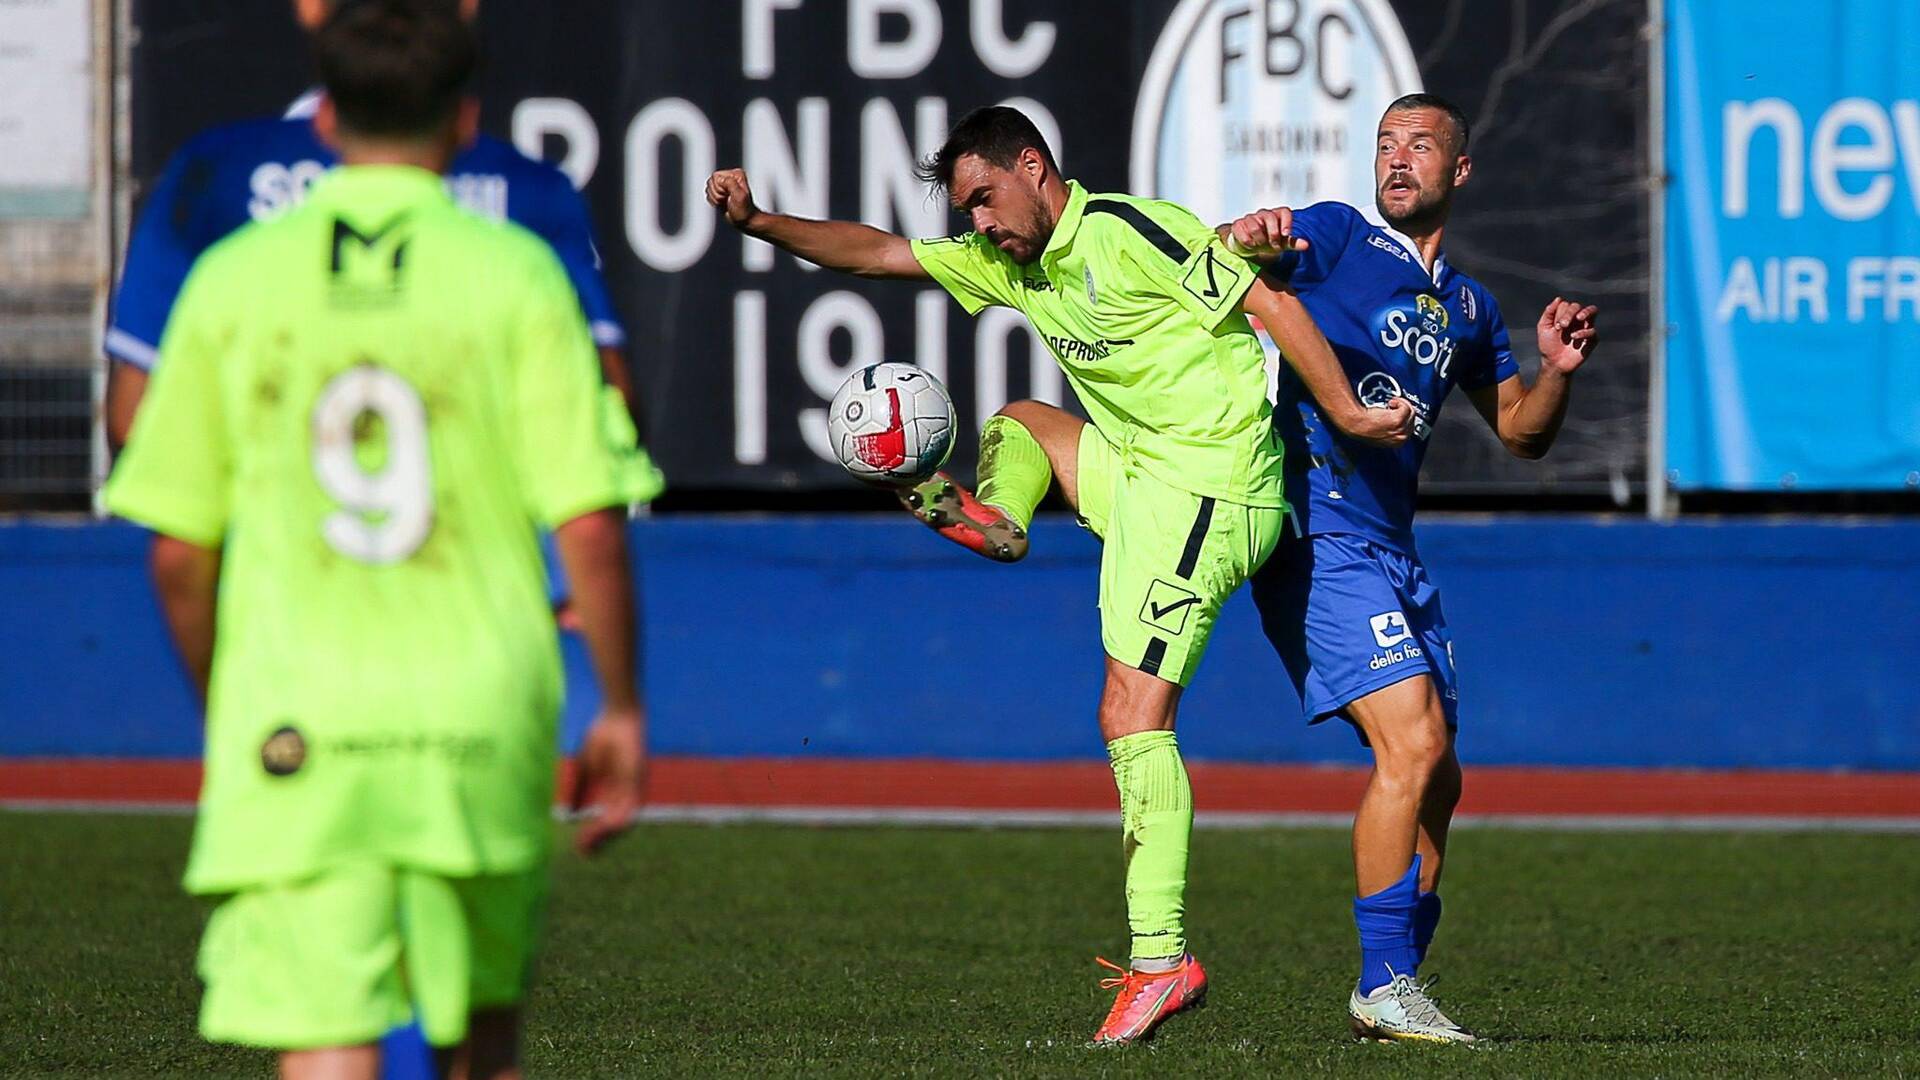 Calcio, Fbc Saronno: Baldan infortunato, doccia fredda in vista del derby